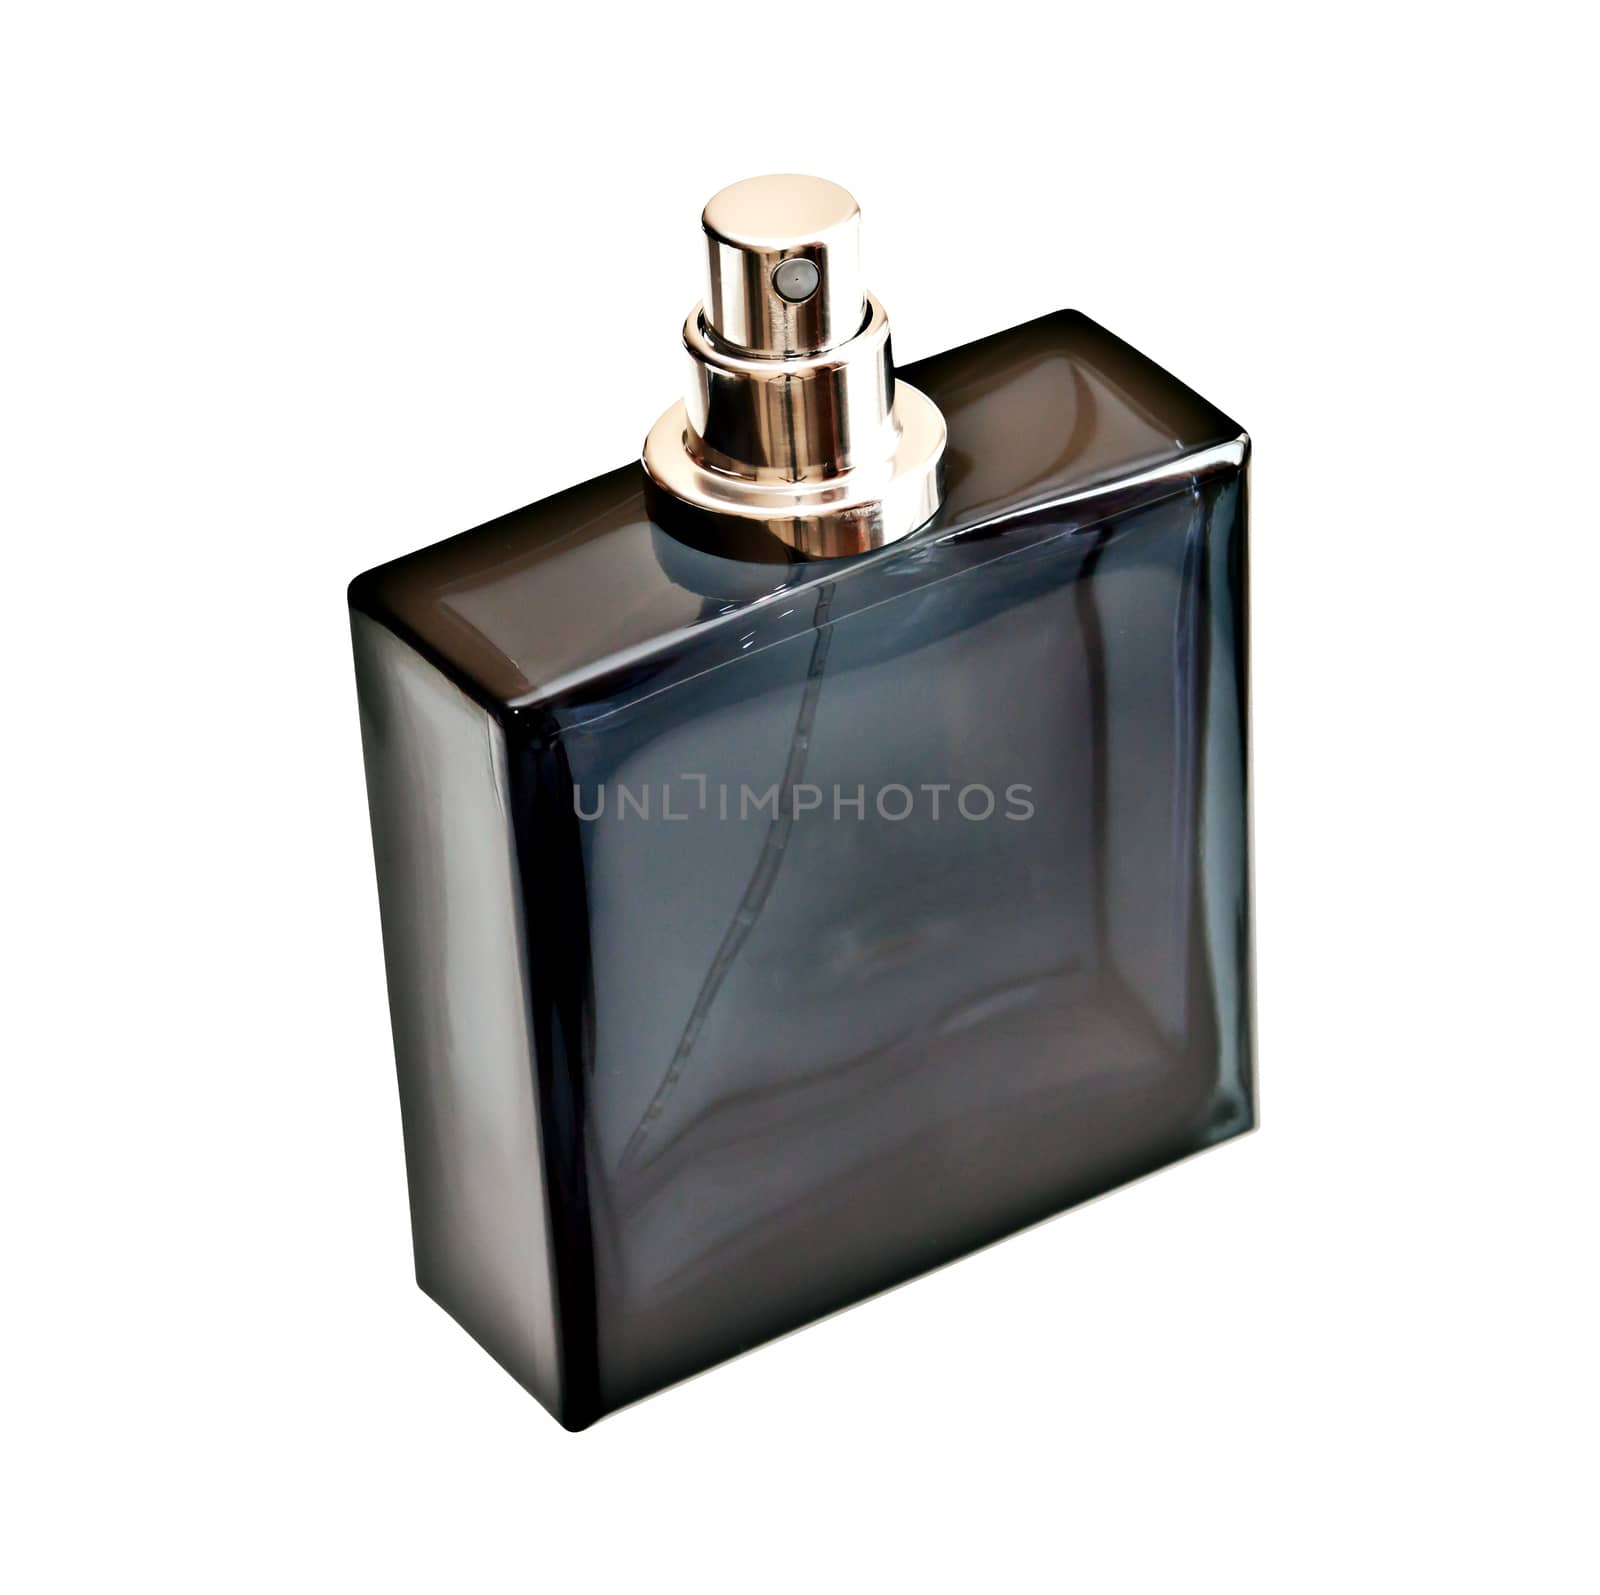 Perfume bottle isolated on white background
